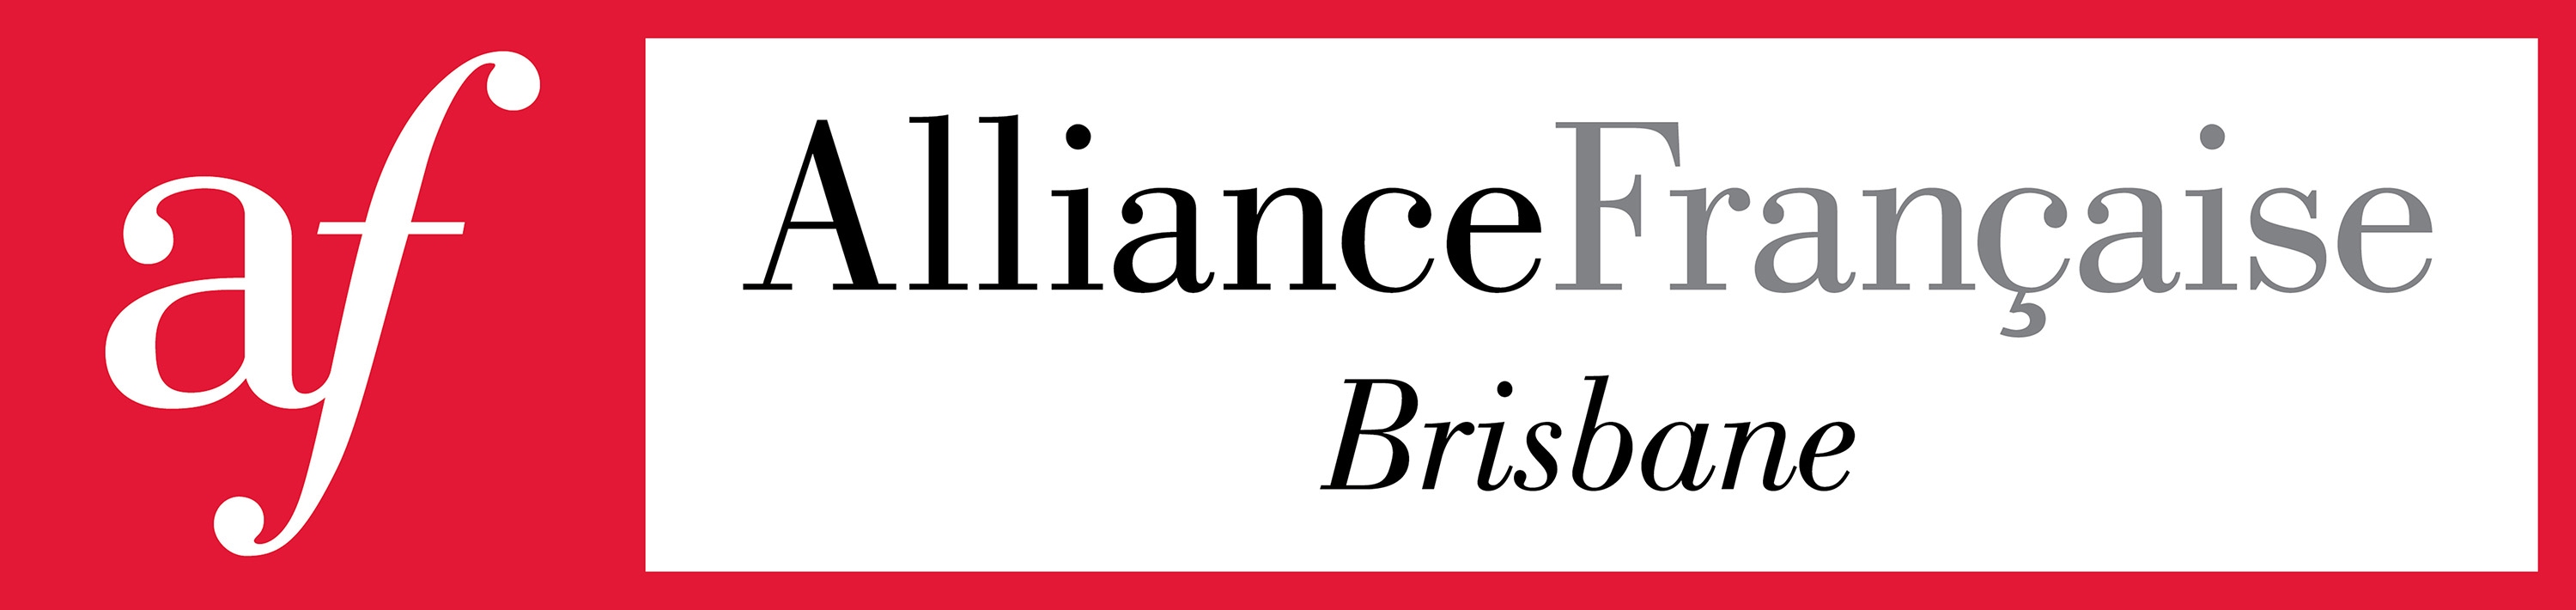 Alliance Française de Brisbane